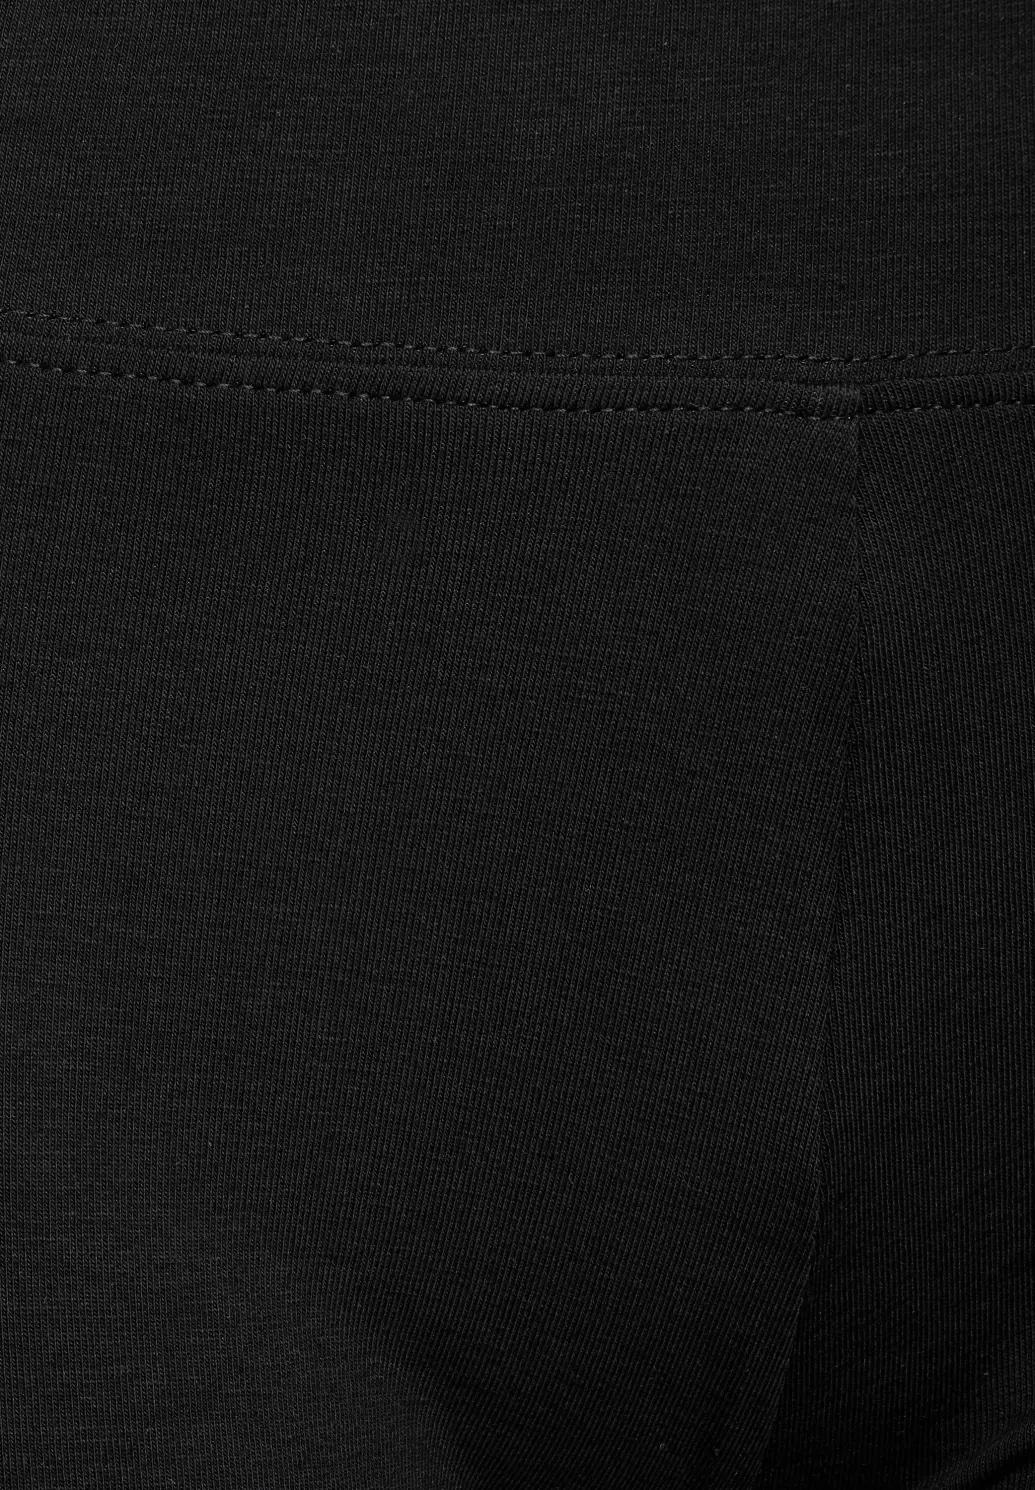 CECIL elastické šortky, čierne